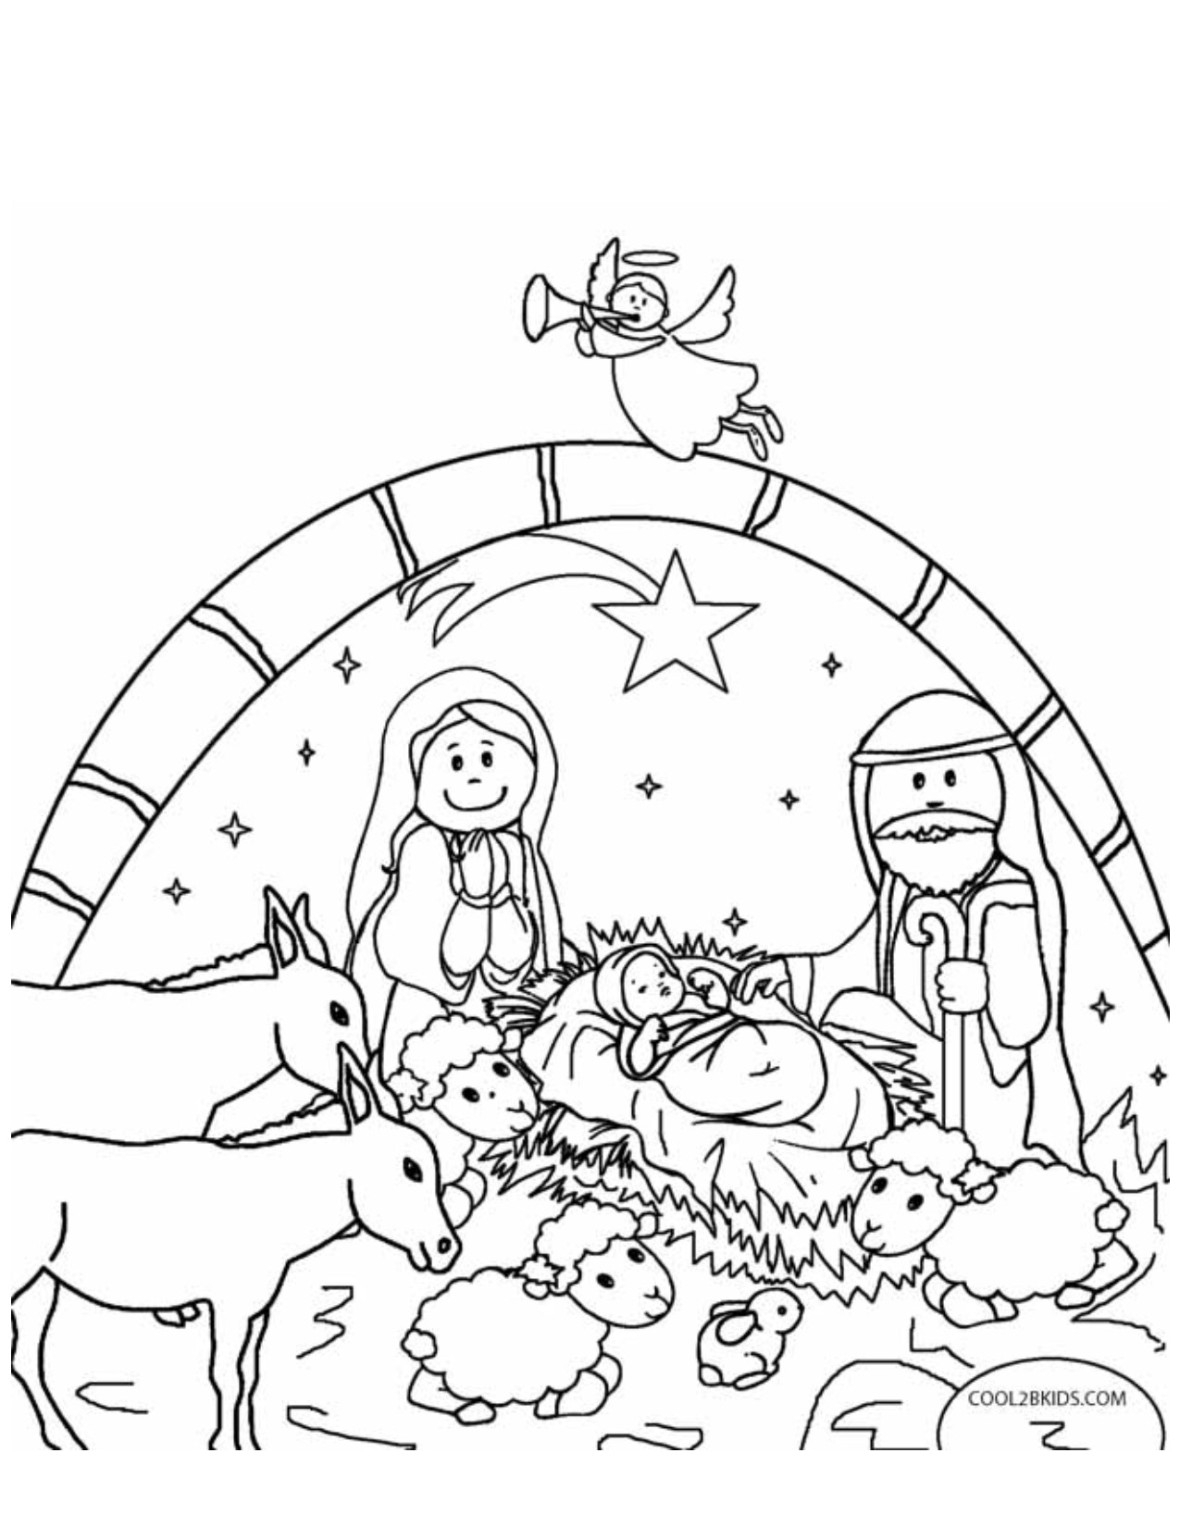 Раскраска на рождественскую тему для детей